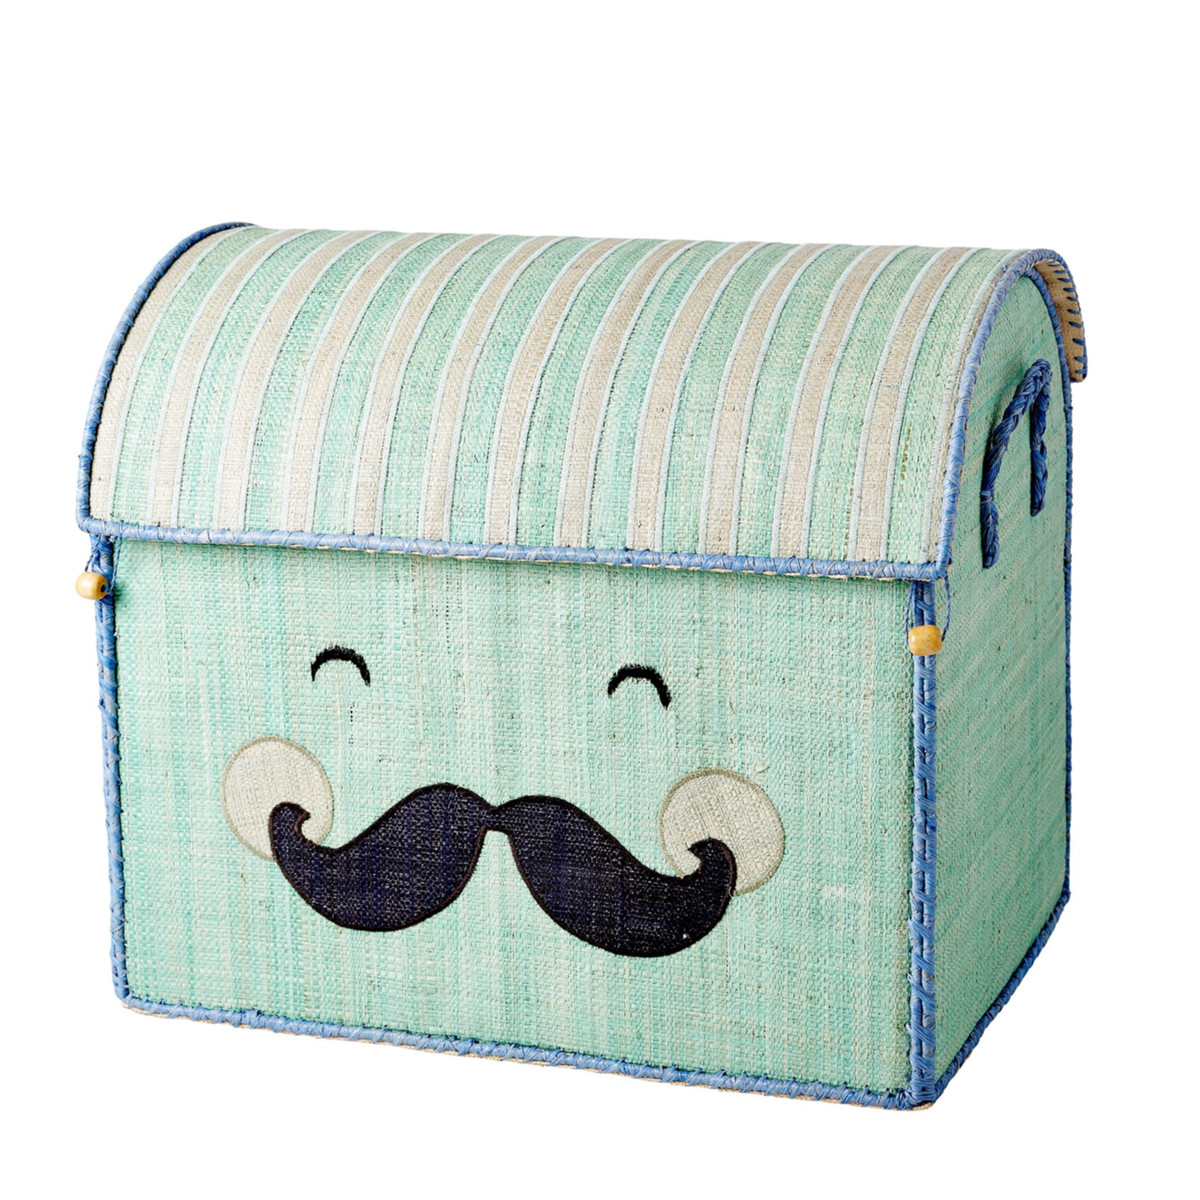 Große Spielzeugkiste - Smiling Moustach - Schnurrbart - Aufbewahrung -  Pastellgrün - Rice